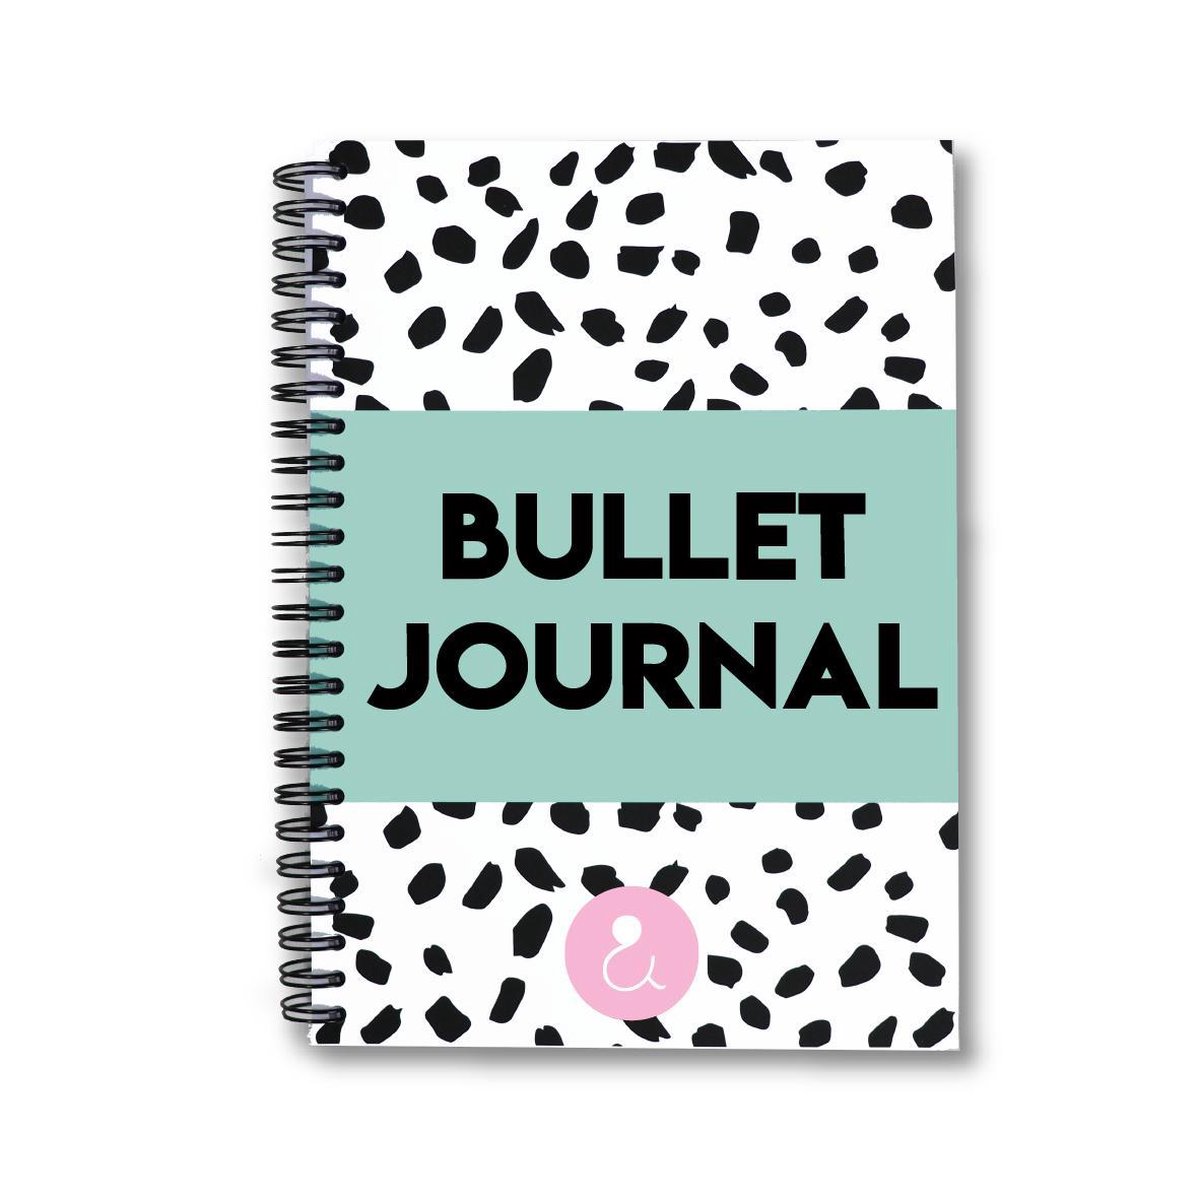 bullet journal producten - bullet journal stickers - bullet journal notebook - dagboek - plakboek - fotoalbum - fotoboek